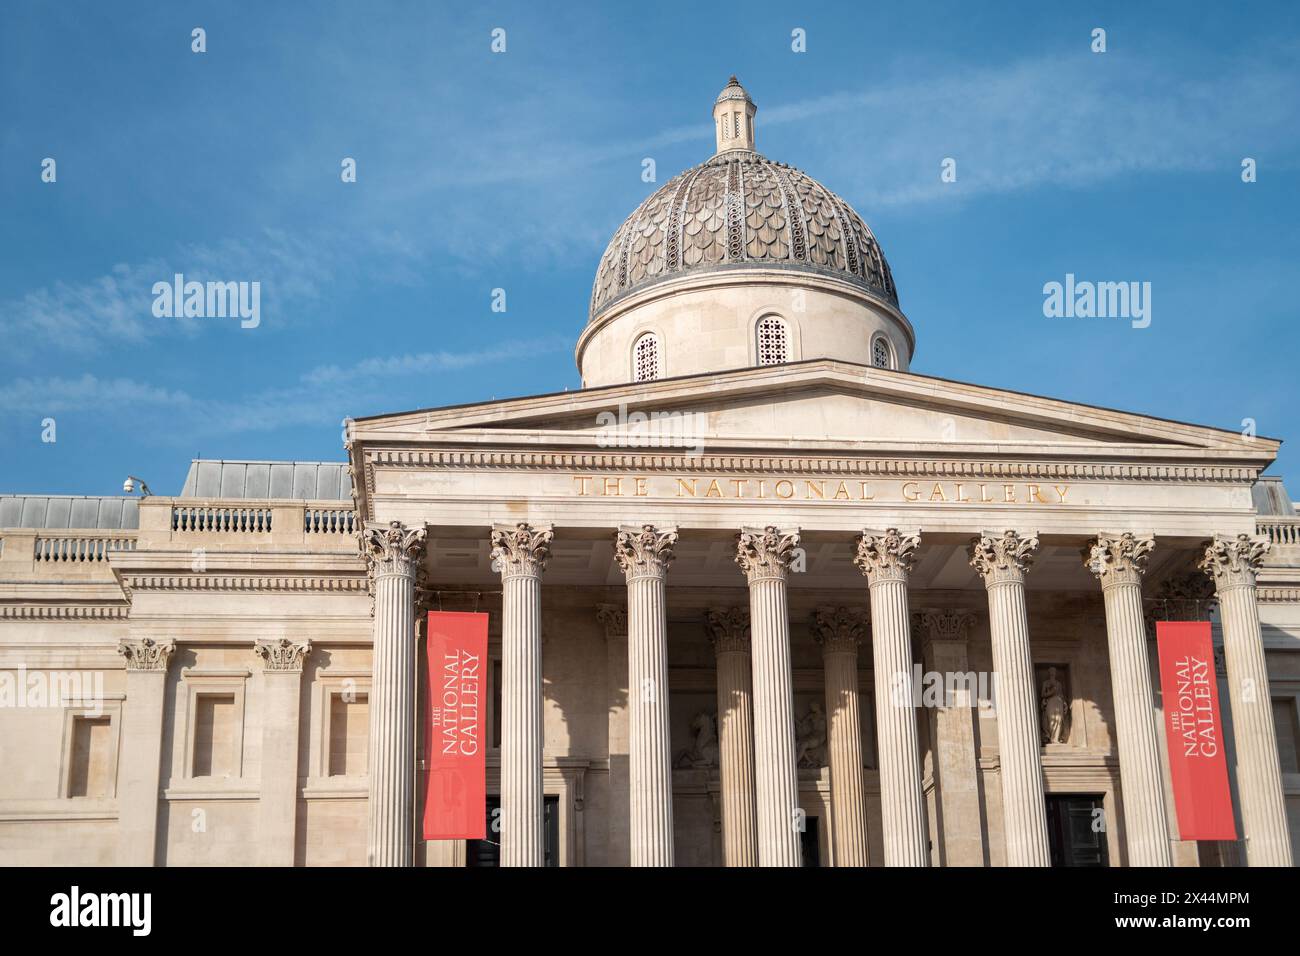 La National Gallery est un musée d'art situé à Trafalgar Square dans la ville de Westminster, dans le centre de Londres, en Angleterre. Détail de la façade. Banque D'Images